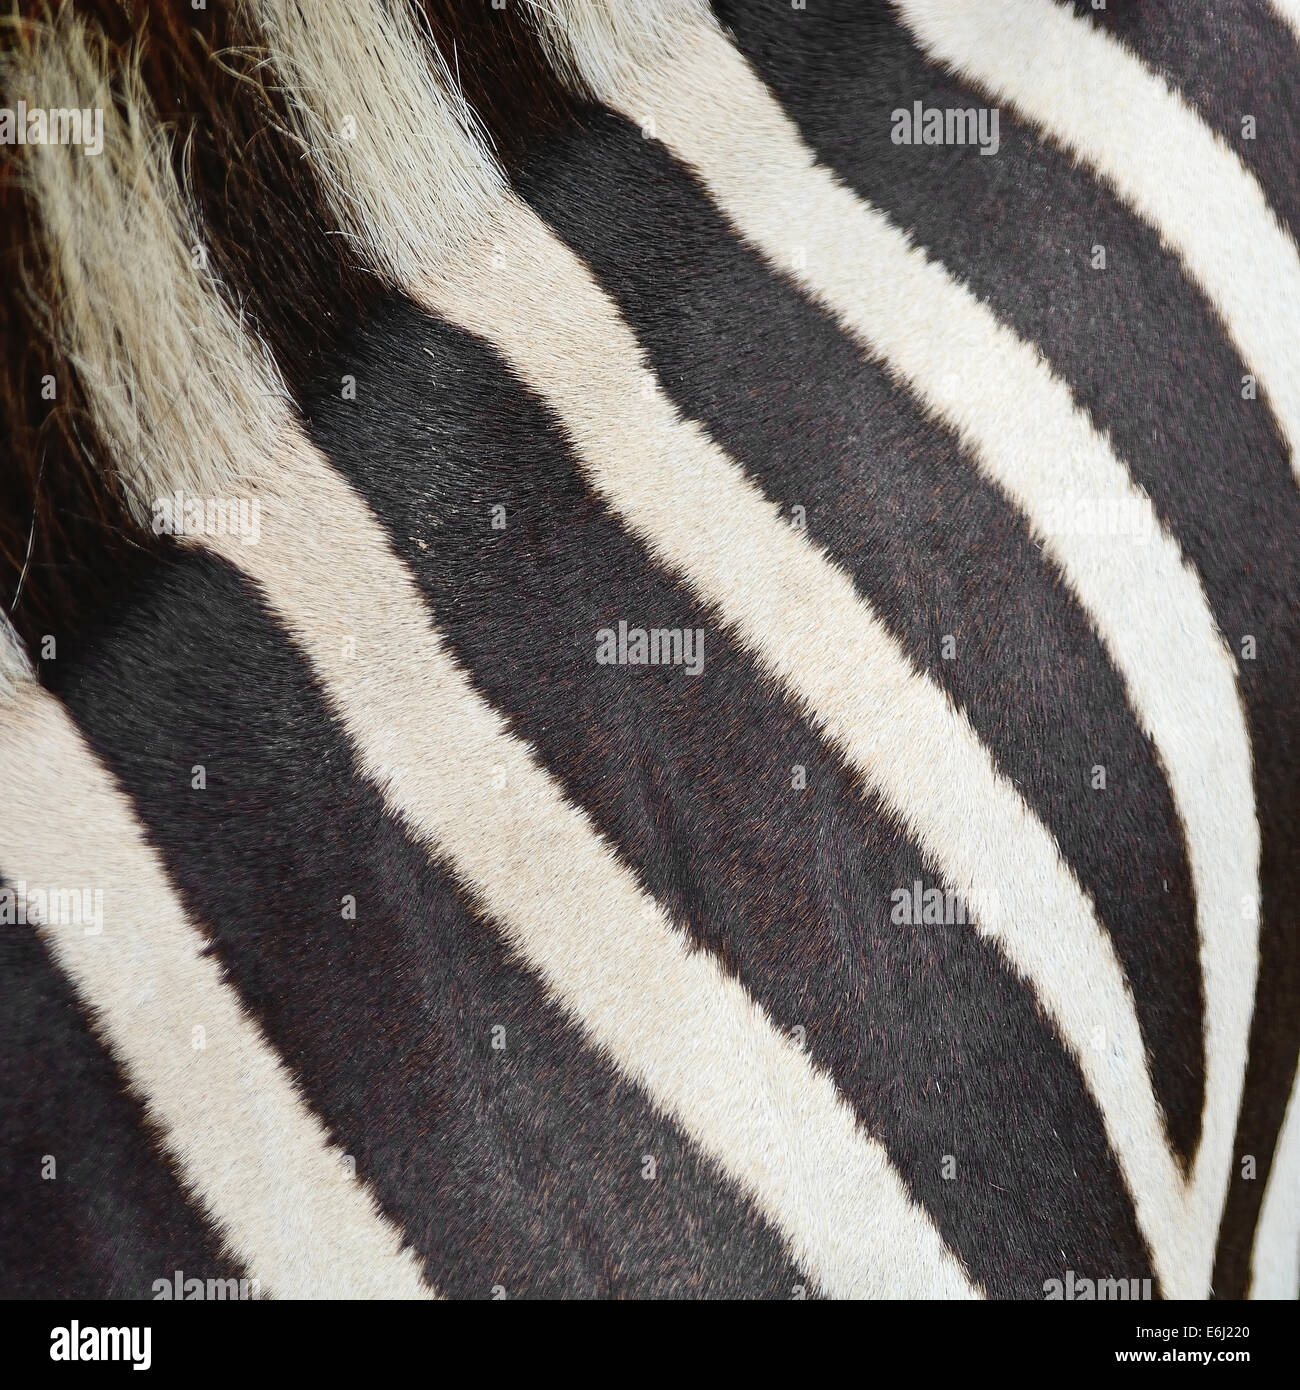 Pelle di animale, comune o Zebra Burchell's Zebra (Equus burchelli), striped texture di sfondo Foto Stock